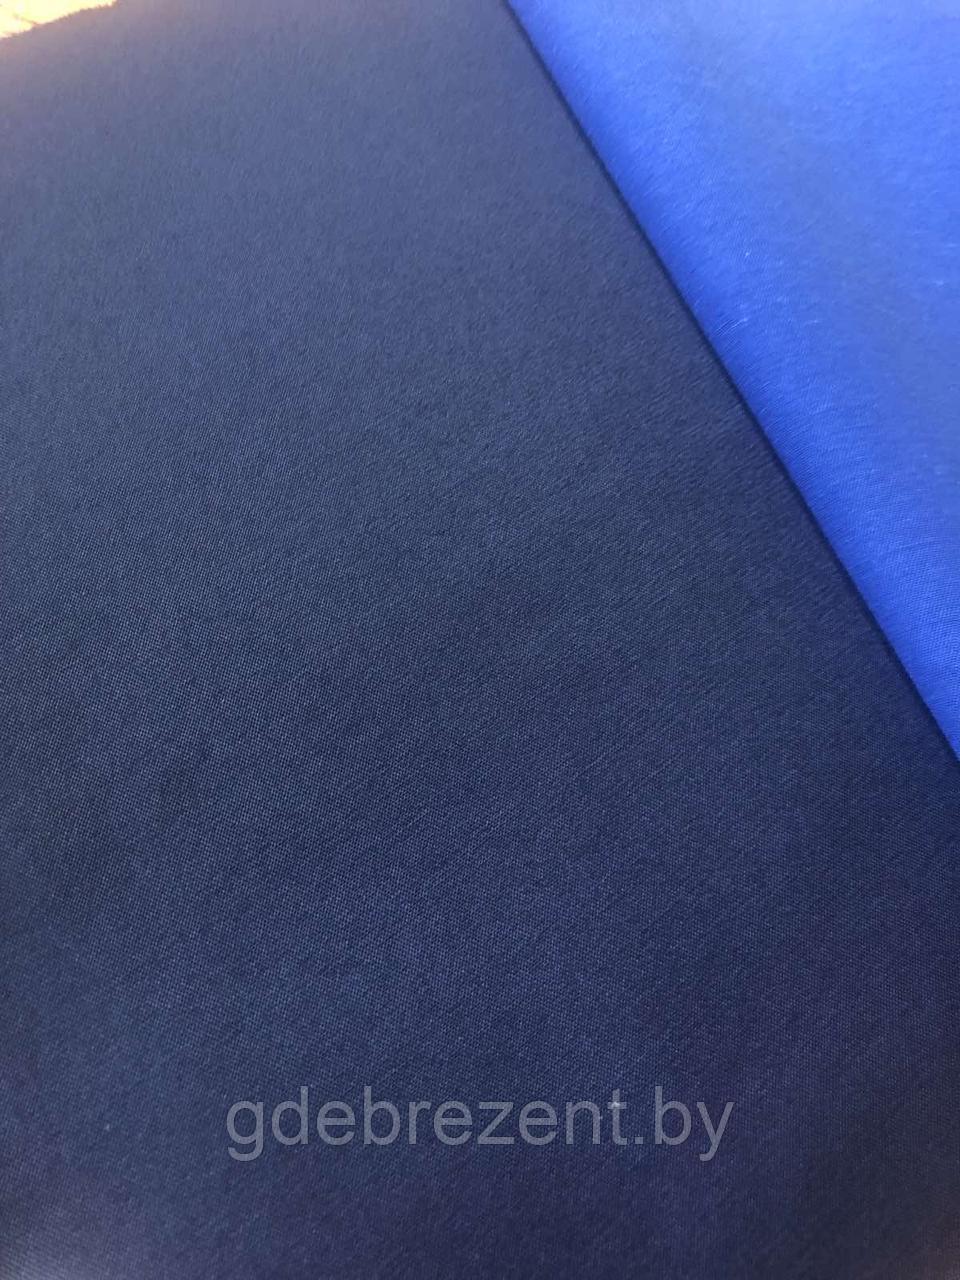 Ткань Заря (синий), фото 1